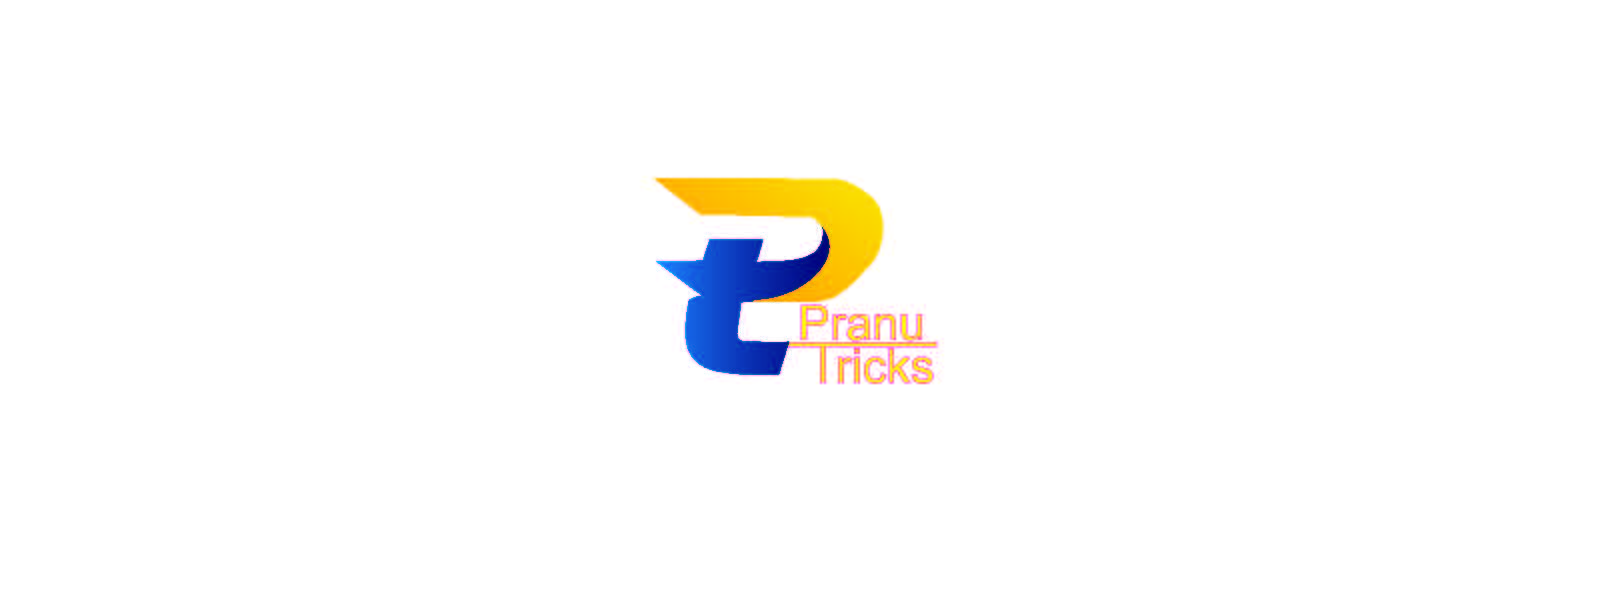 Pranu Tricks